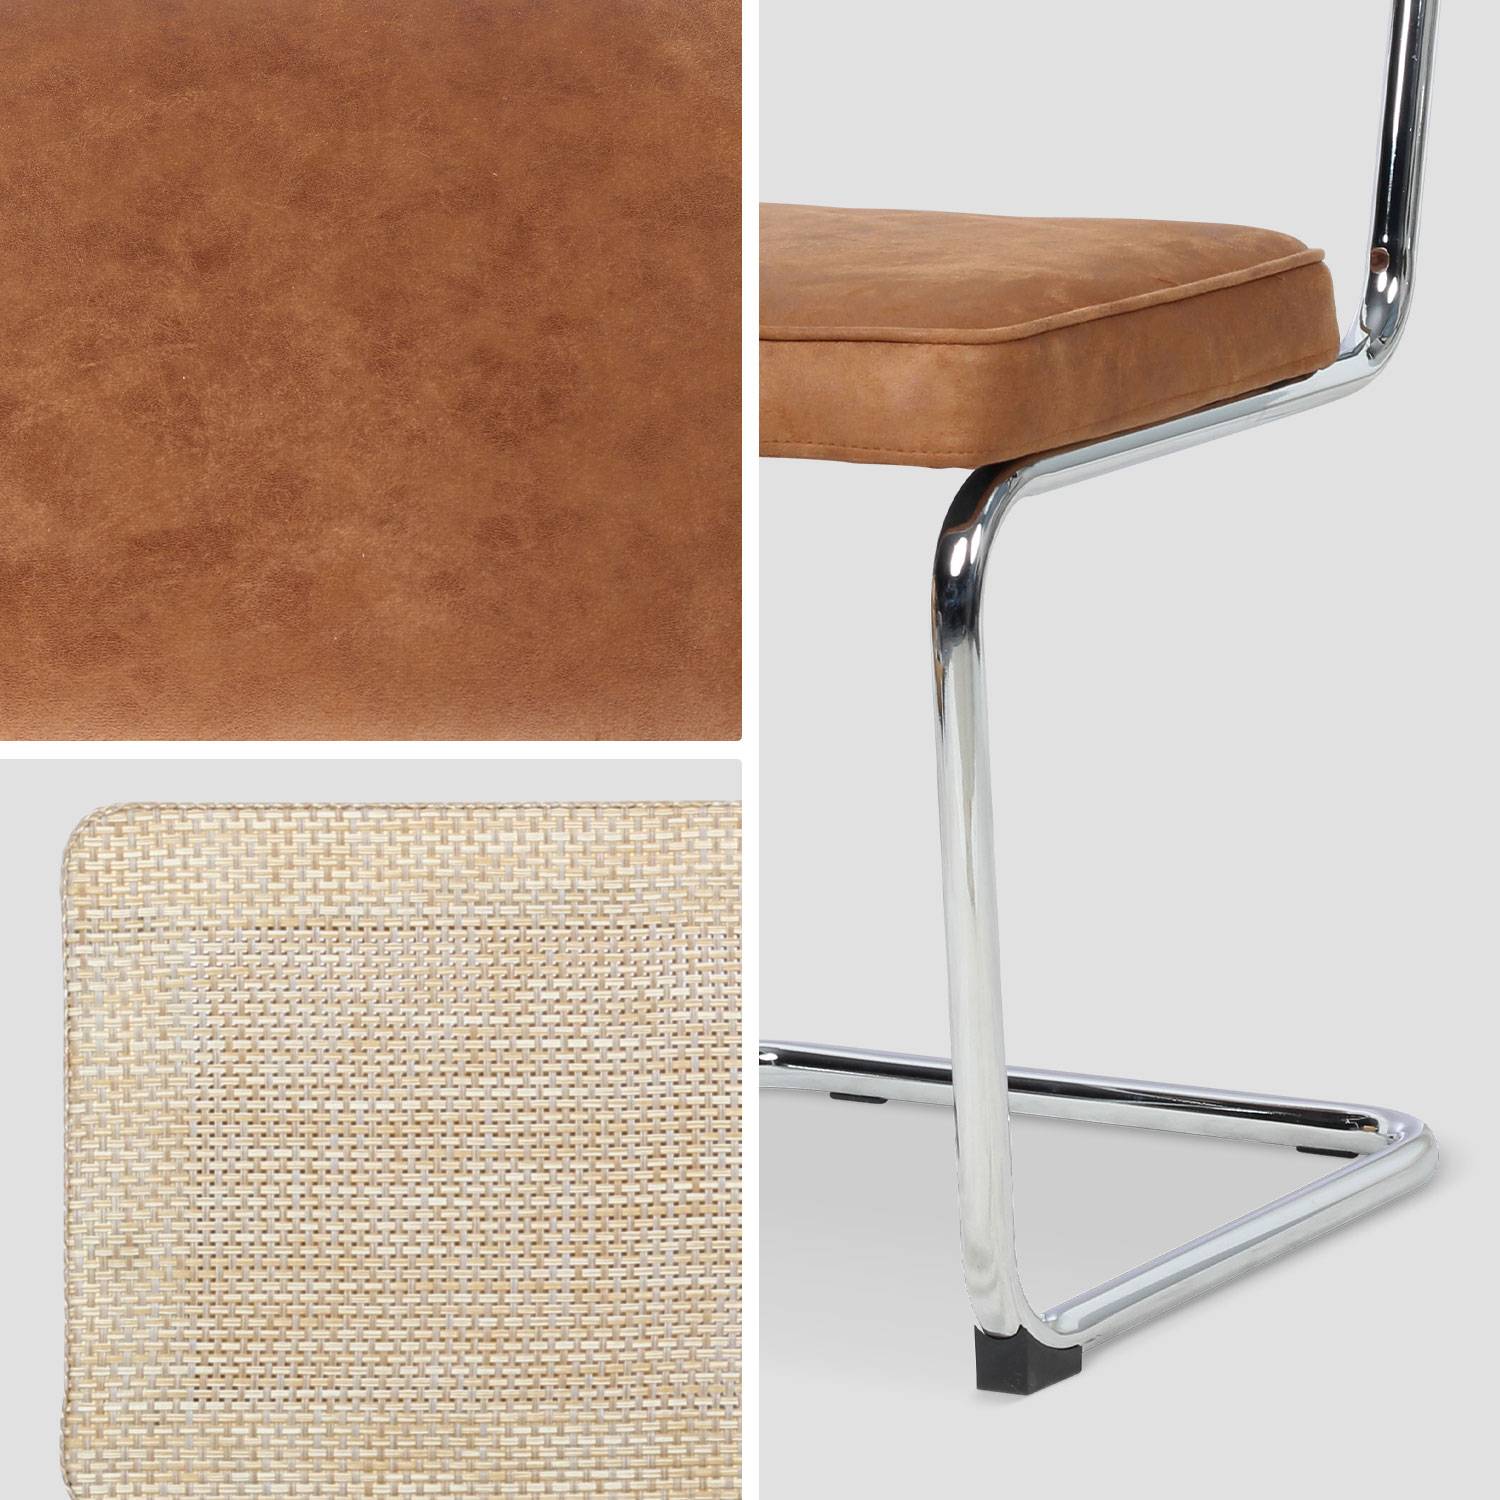 2 cadeiras cantilever - Maja - tecido castanho claro e resina com efeito de rotim, 46 x 54,5 x 84,5 cm Photo6